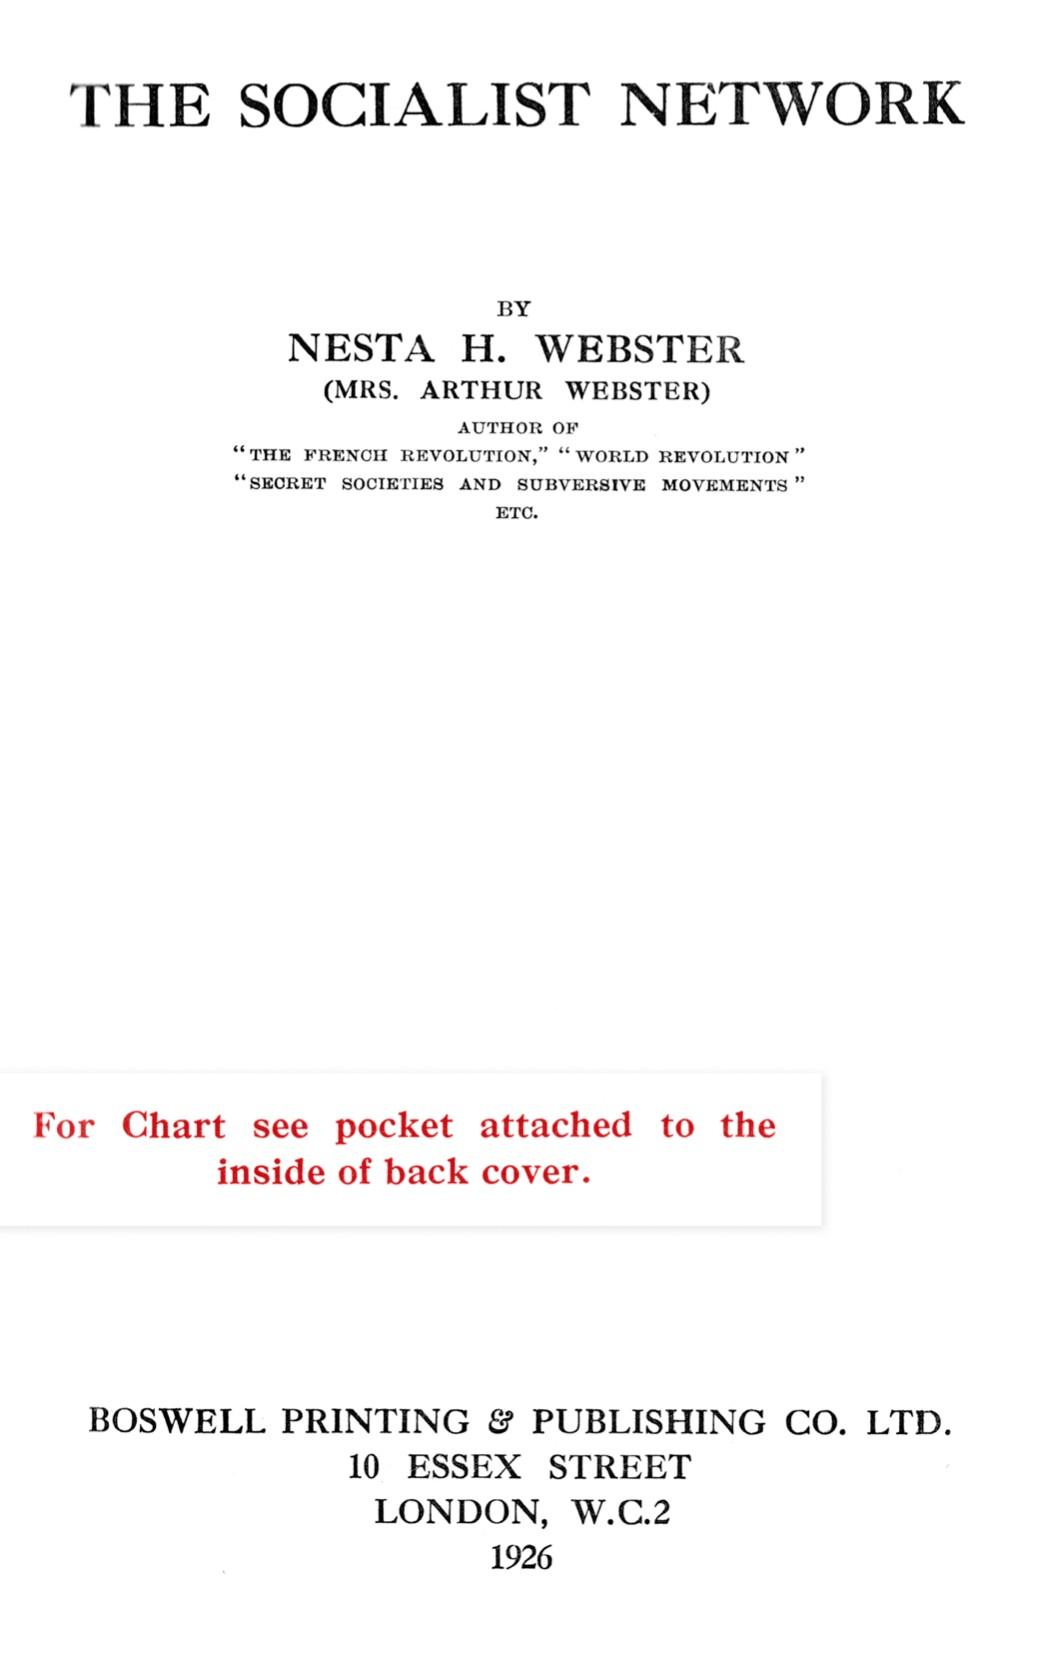 Socialist Network (1926) by Nesta Helen Webster